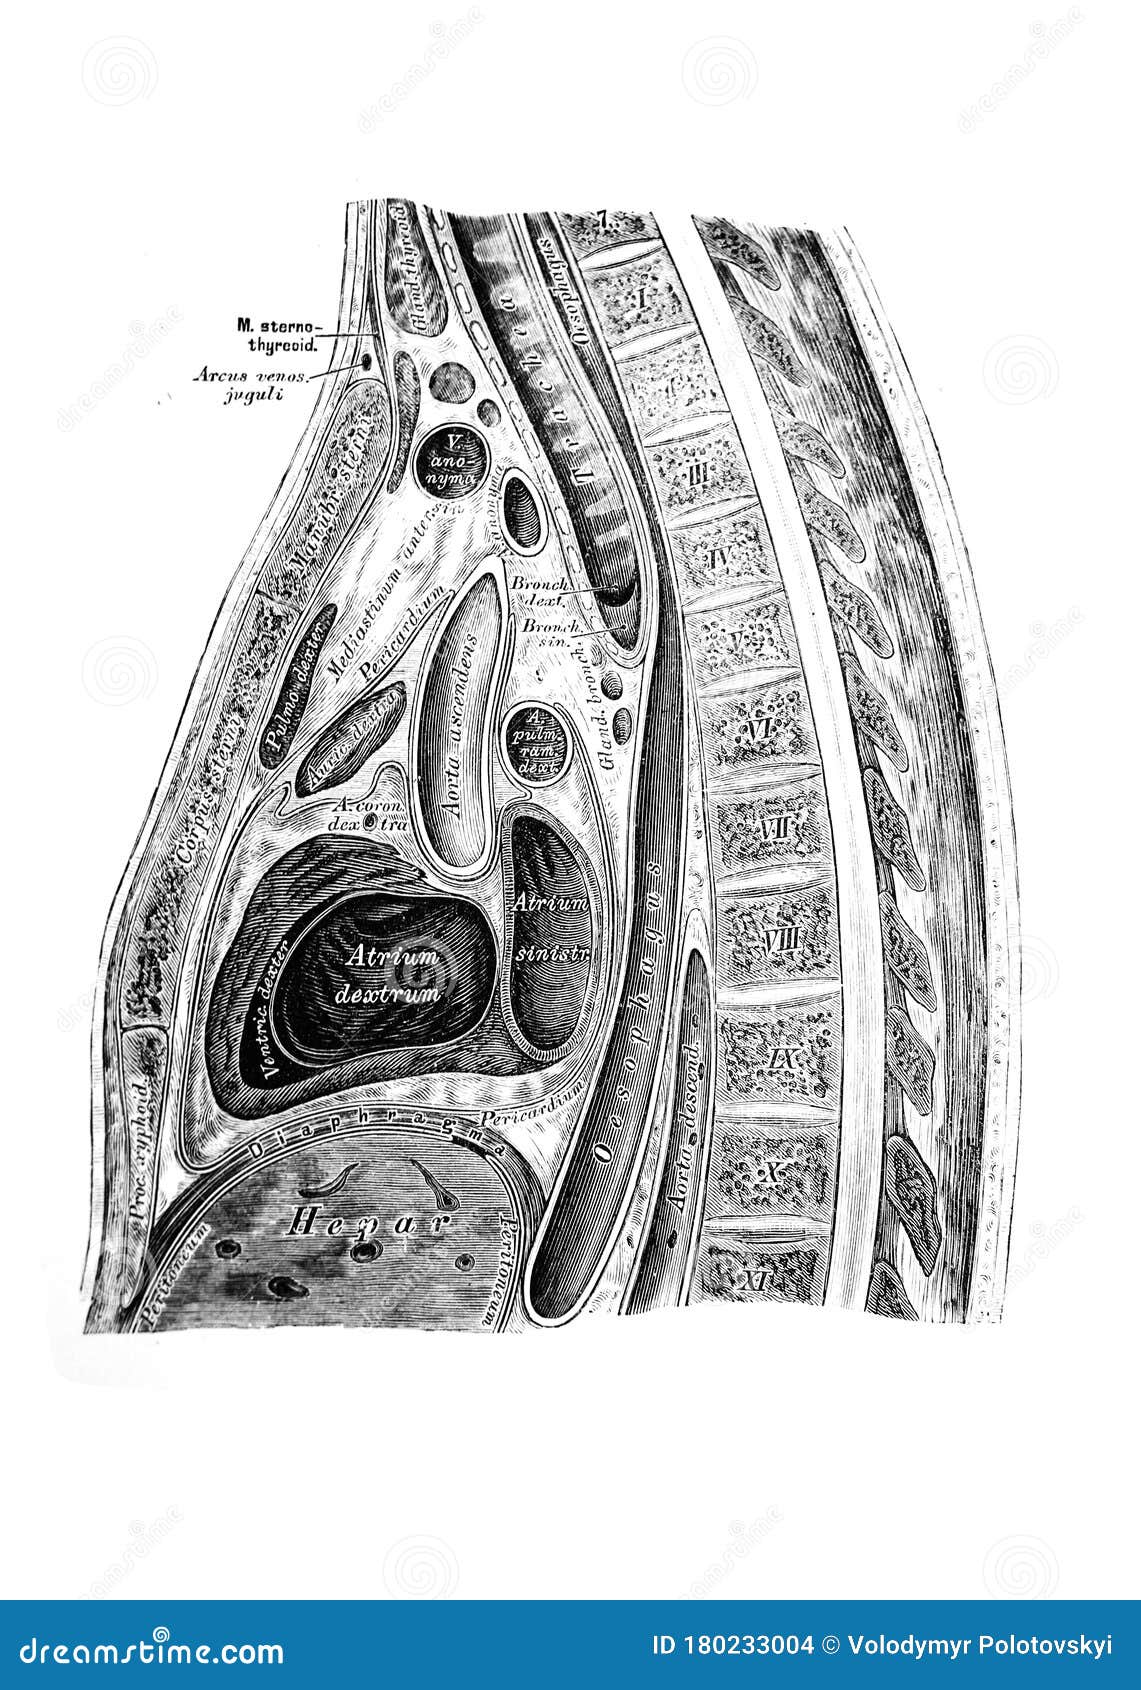 the  of the abdominal viscera with nerves in the old book die anatomie des menschen, by c. heitzmann, 1875, wien